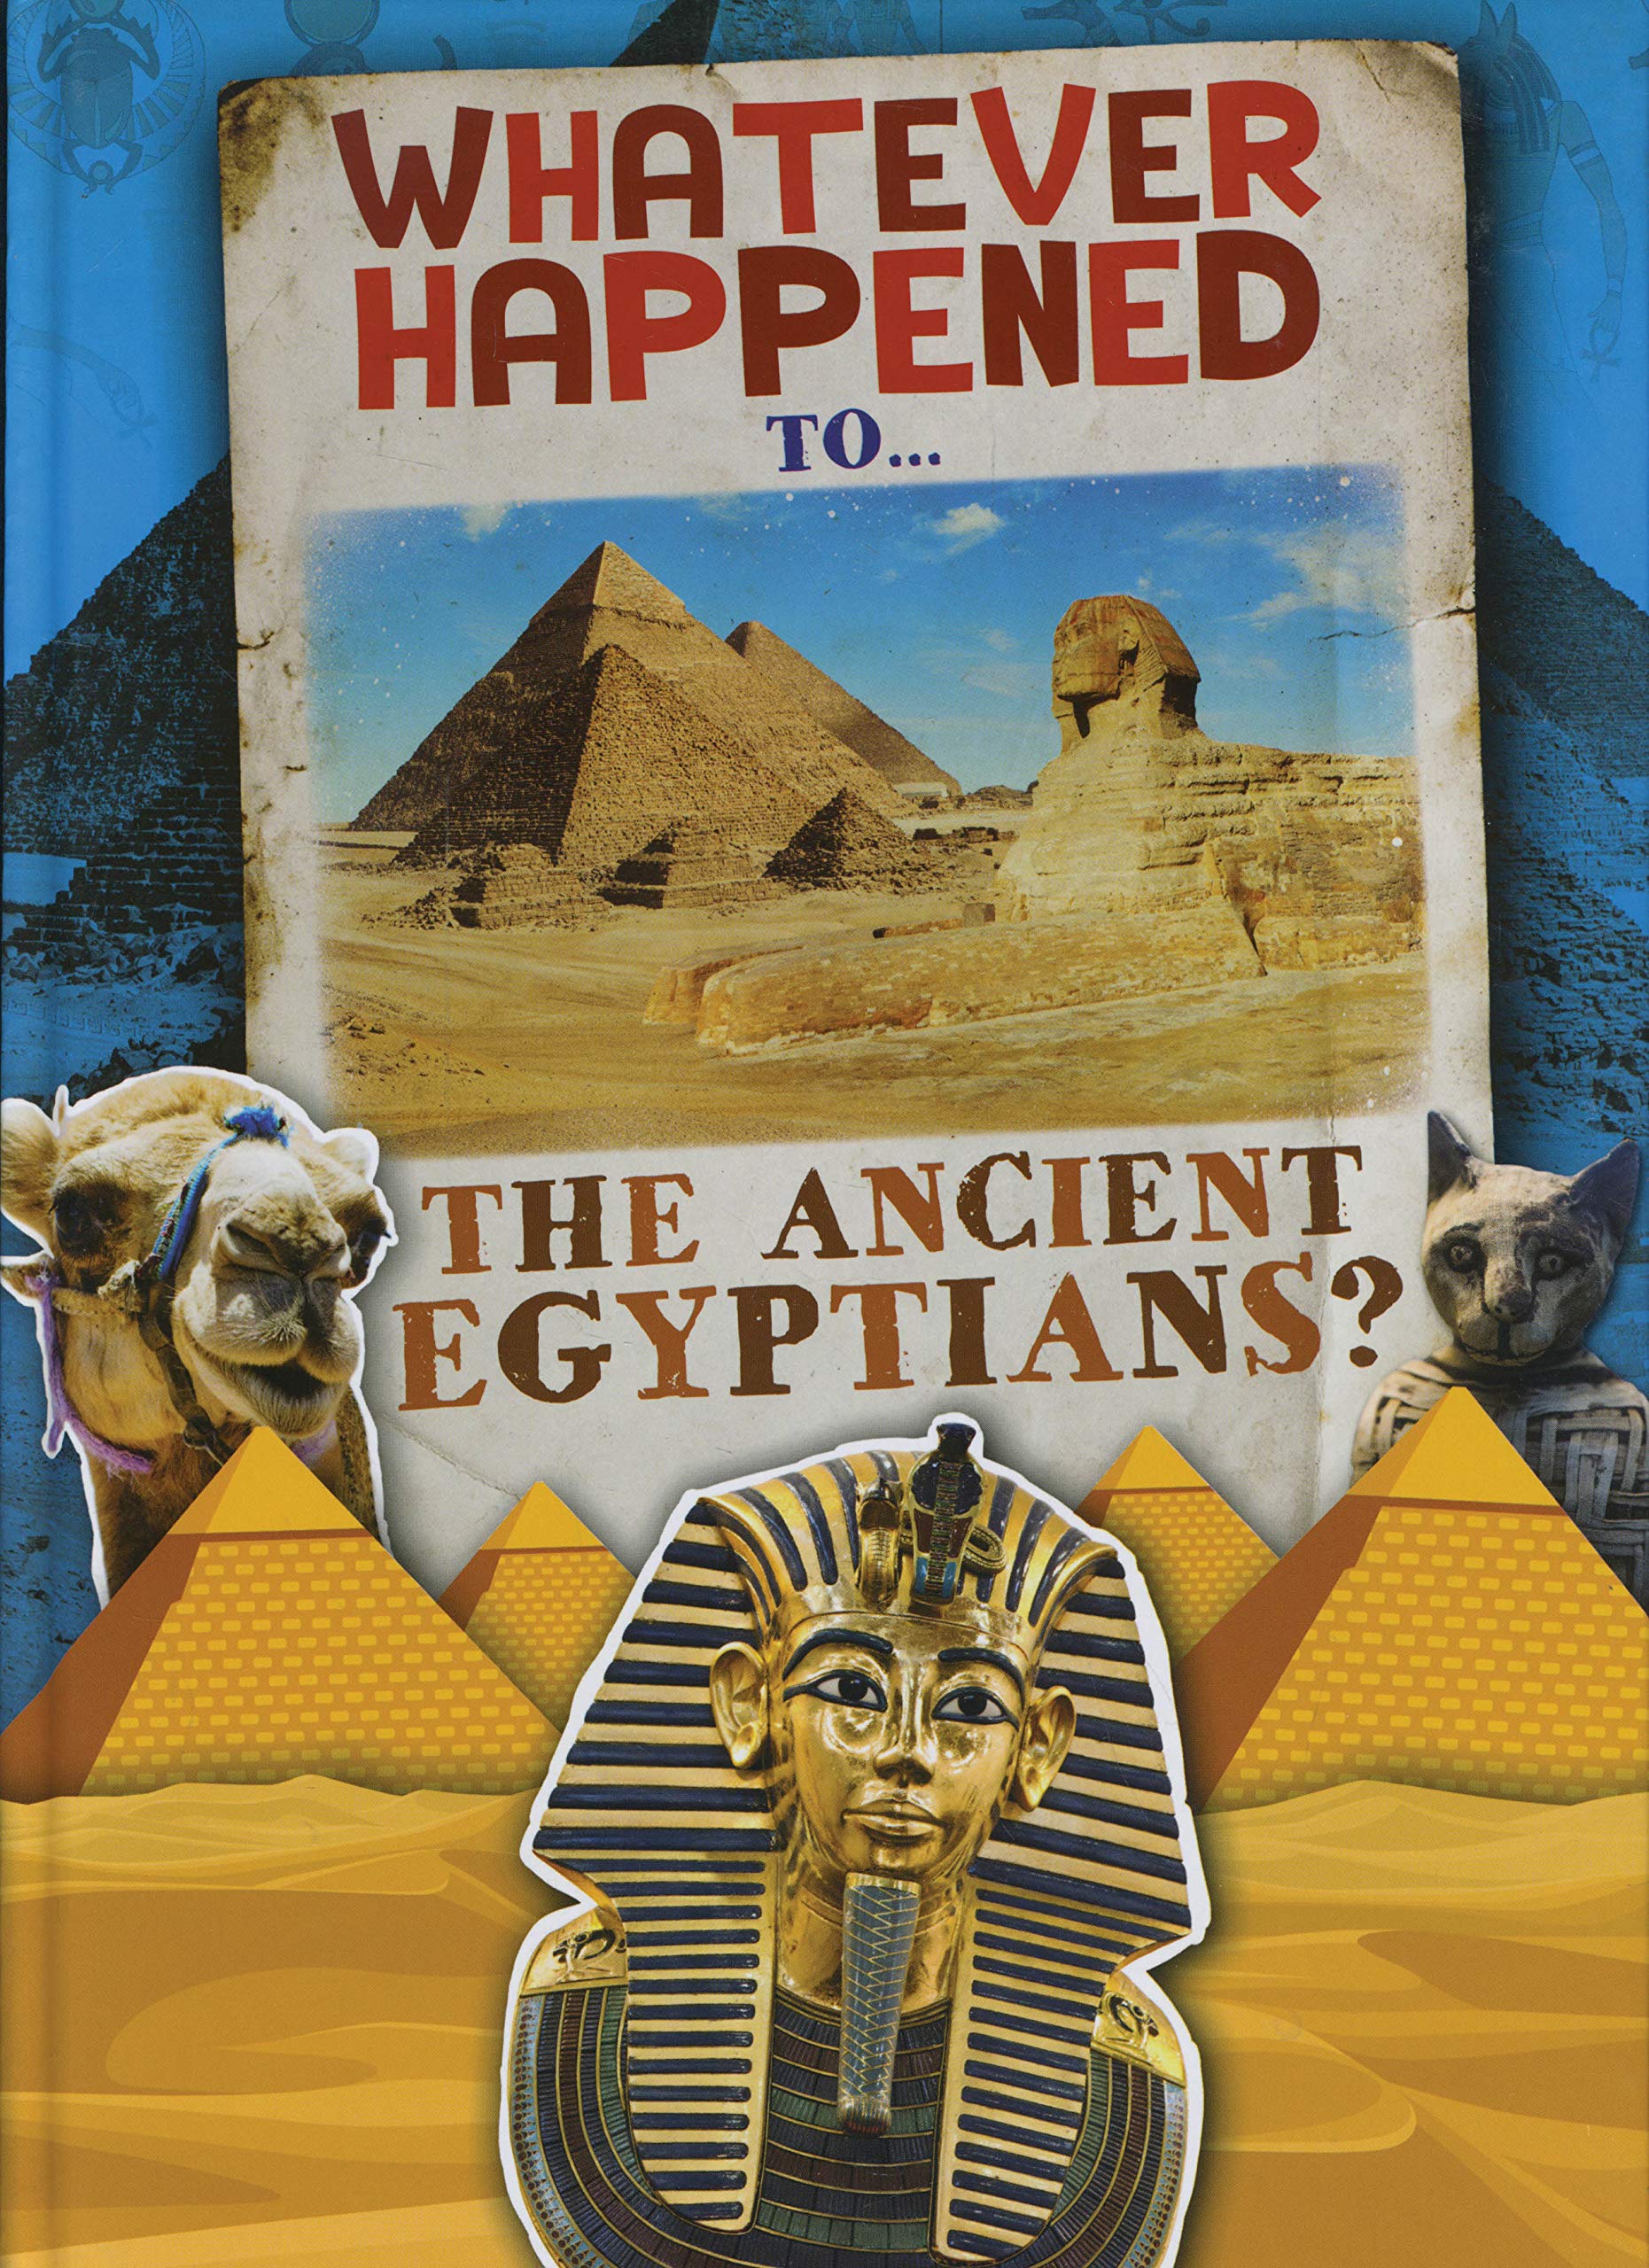 Ancient Egypt 10 Books (KS2)